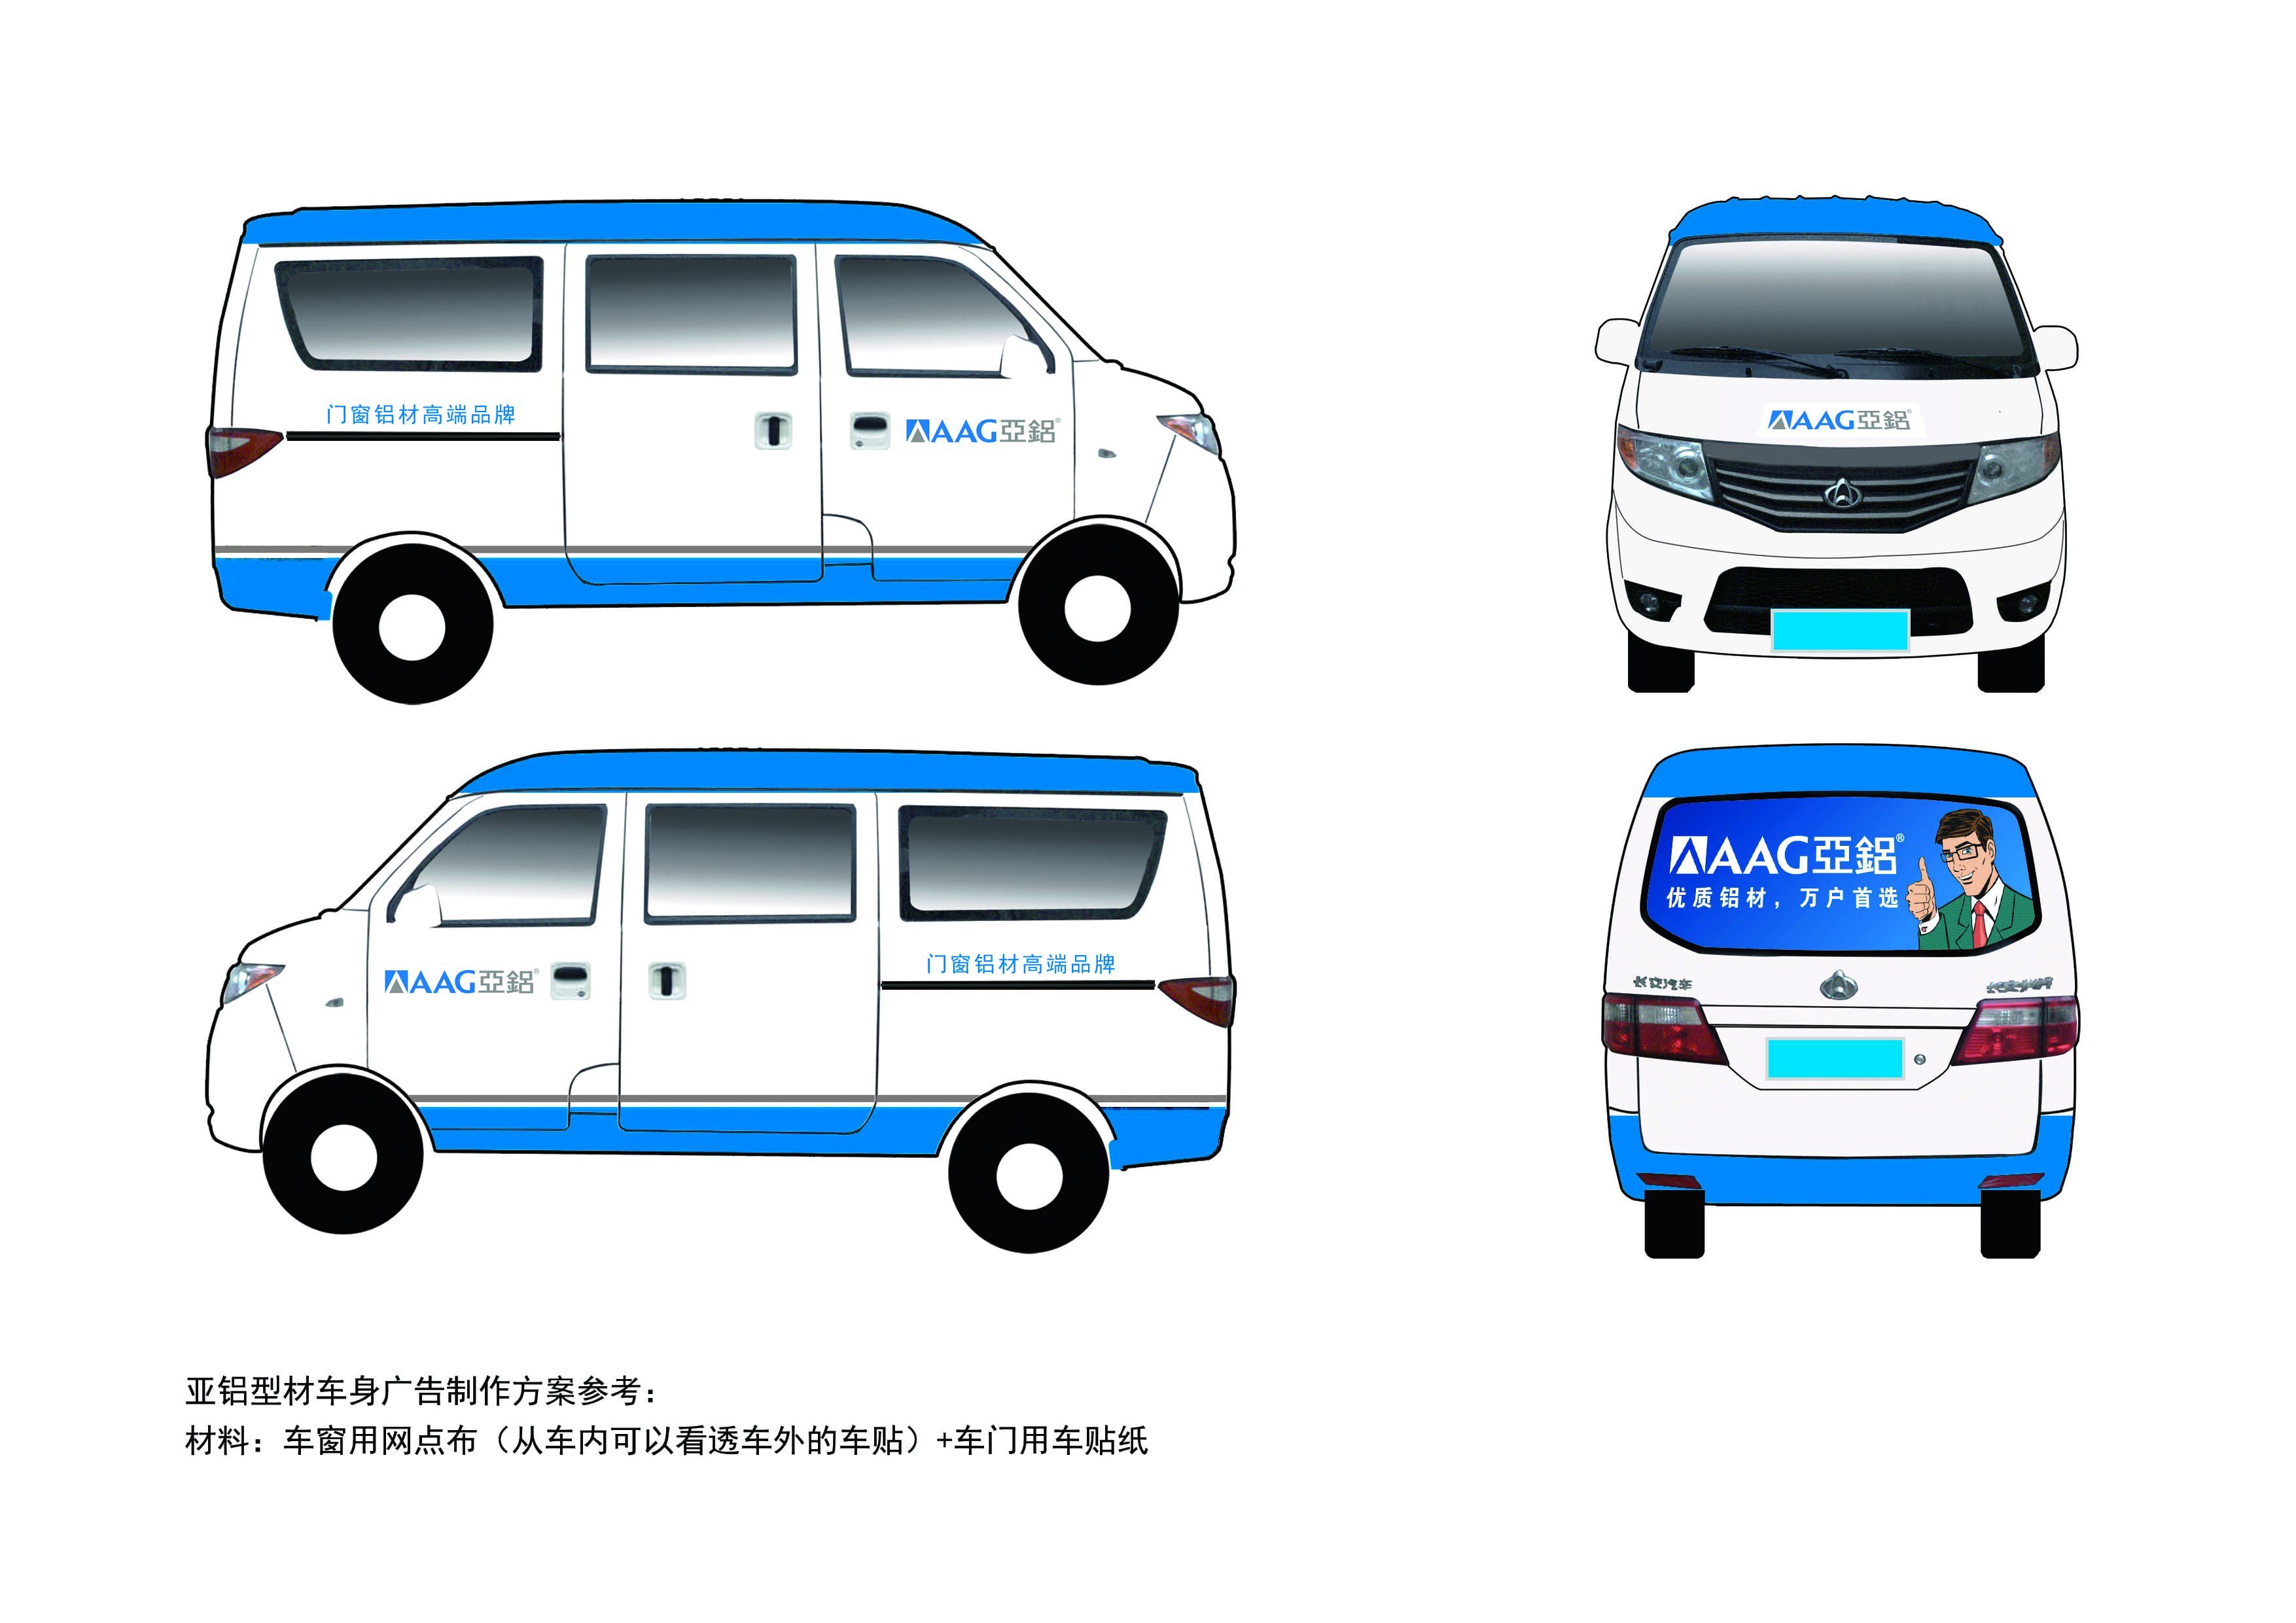 Body ad - minibus